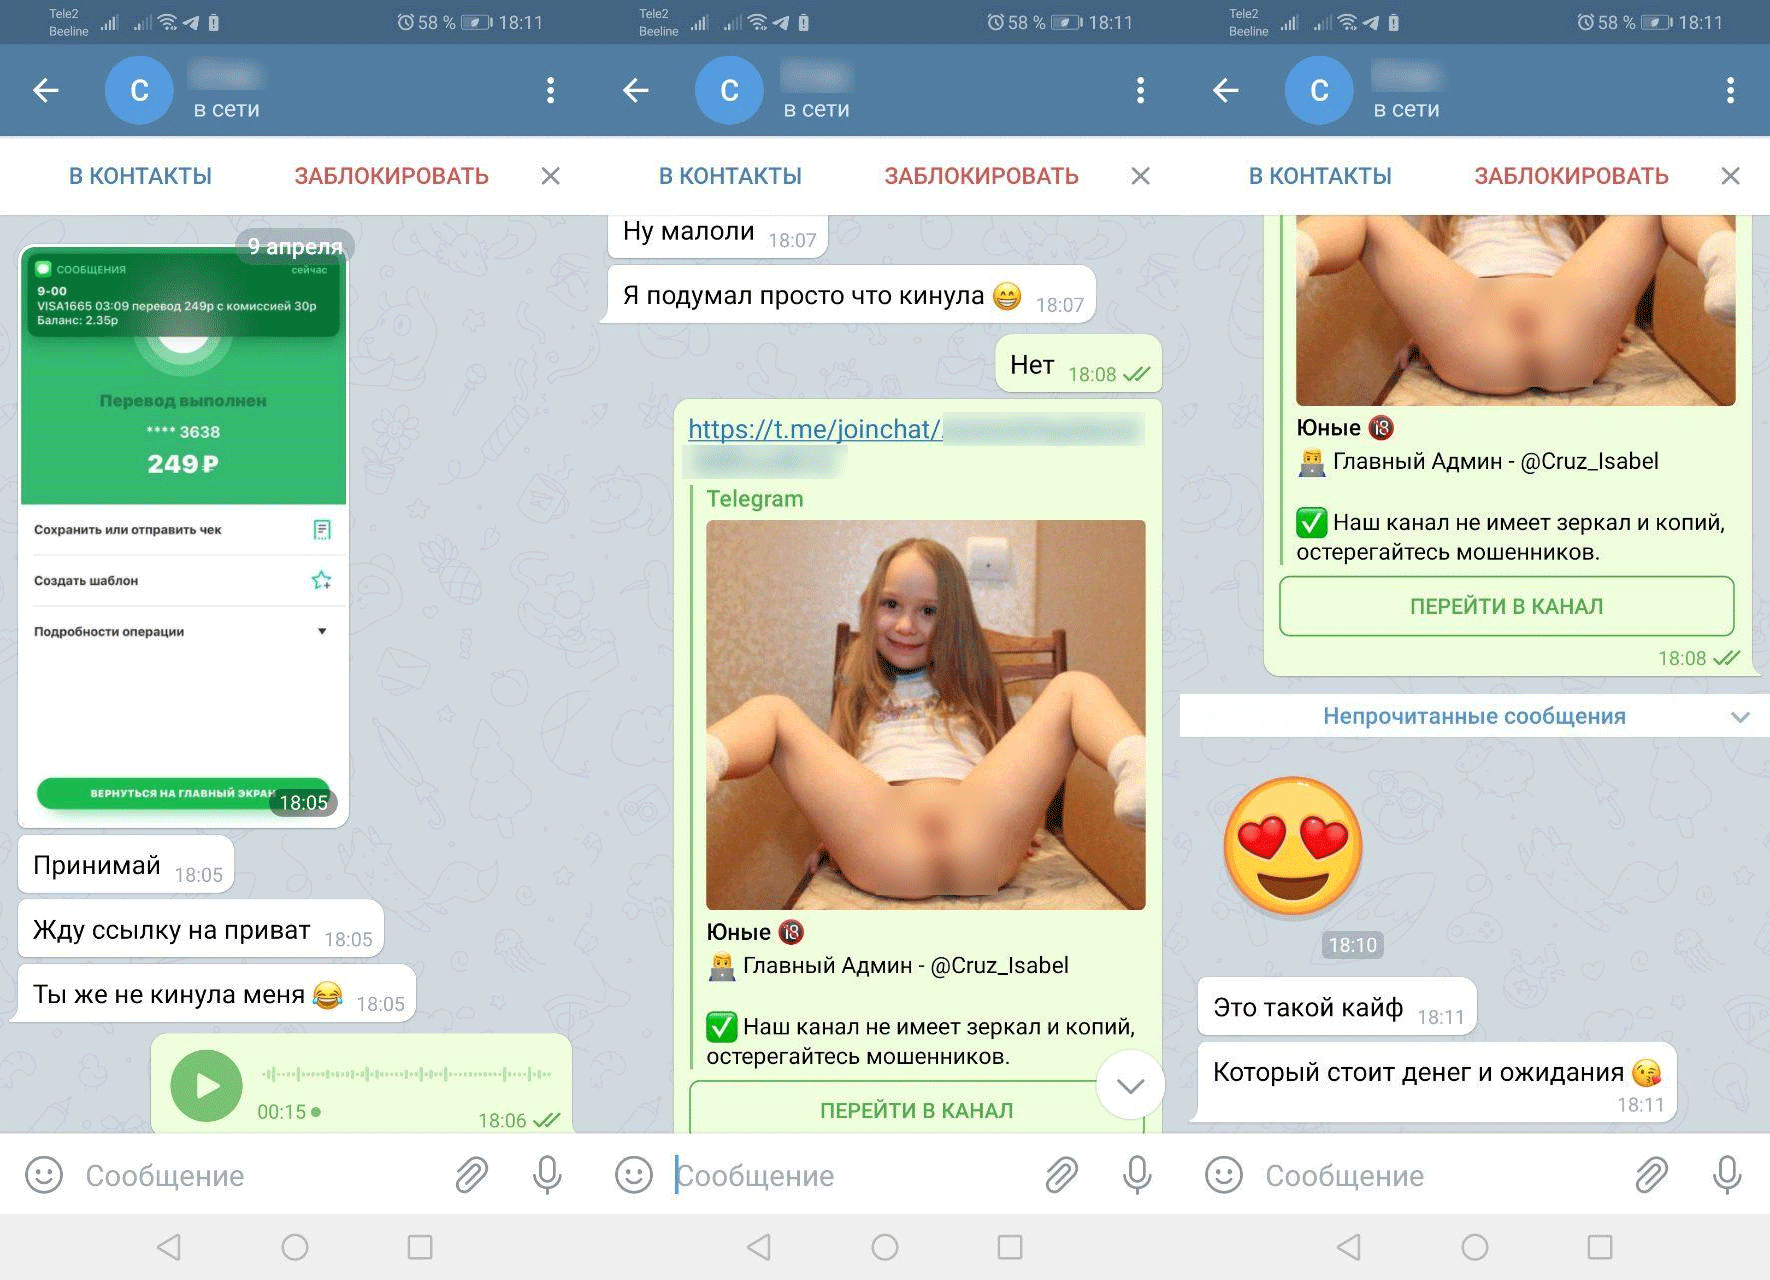 Telegram sex groups